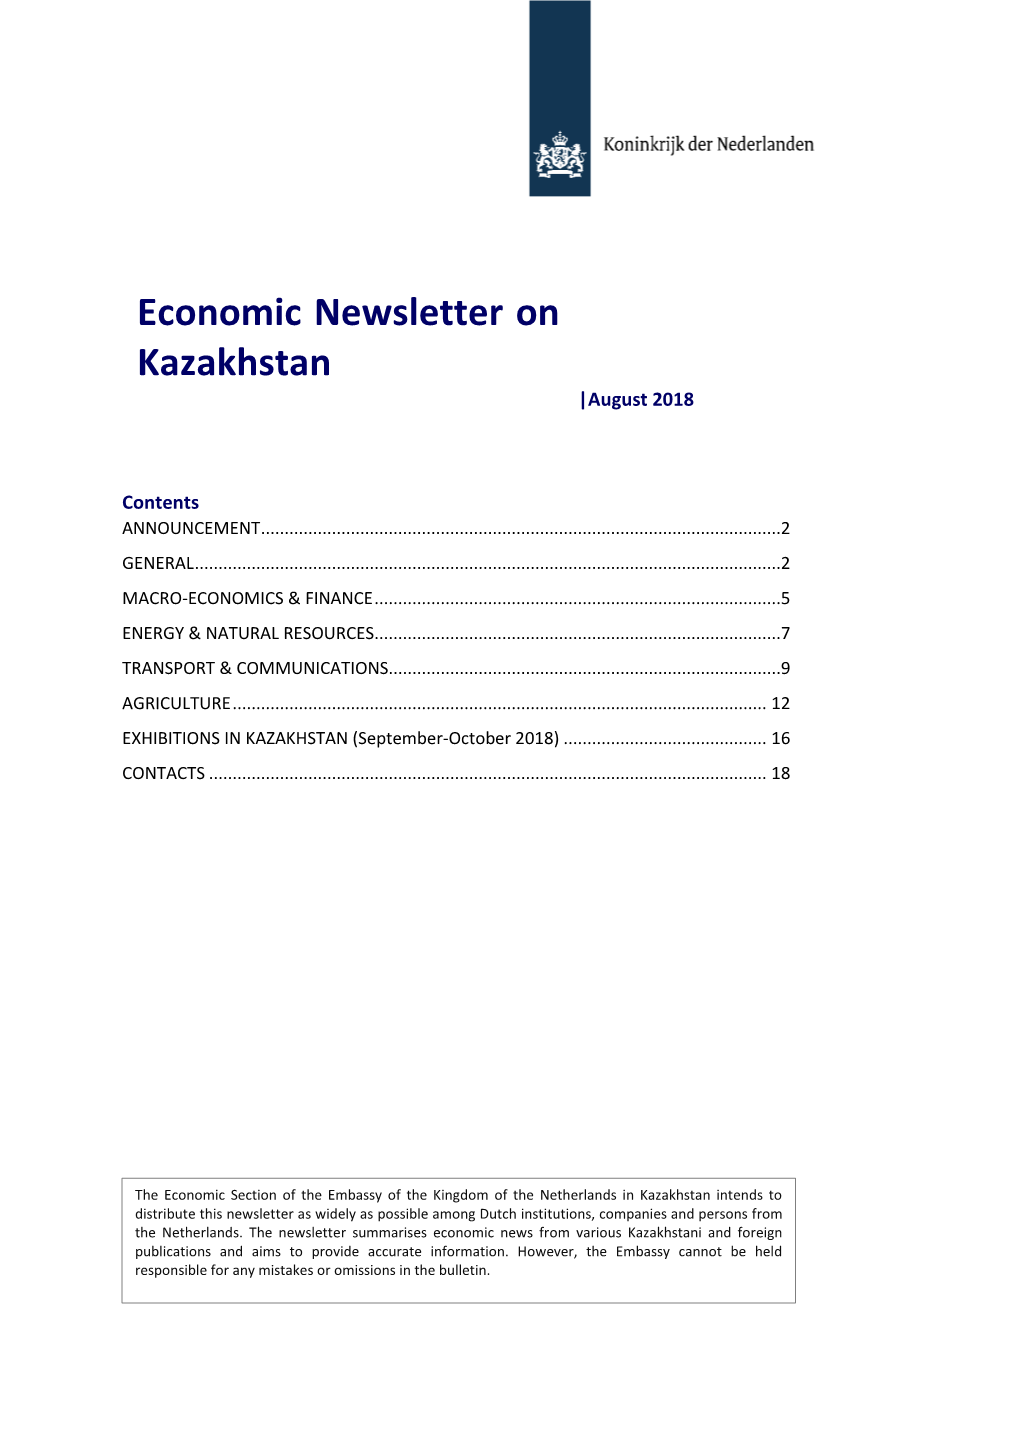 Economic Newsletter on Kazakhstan |August 2018